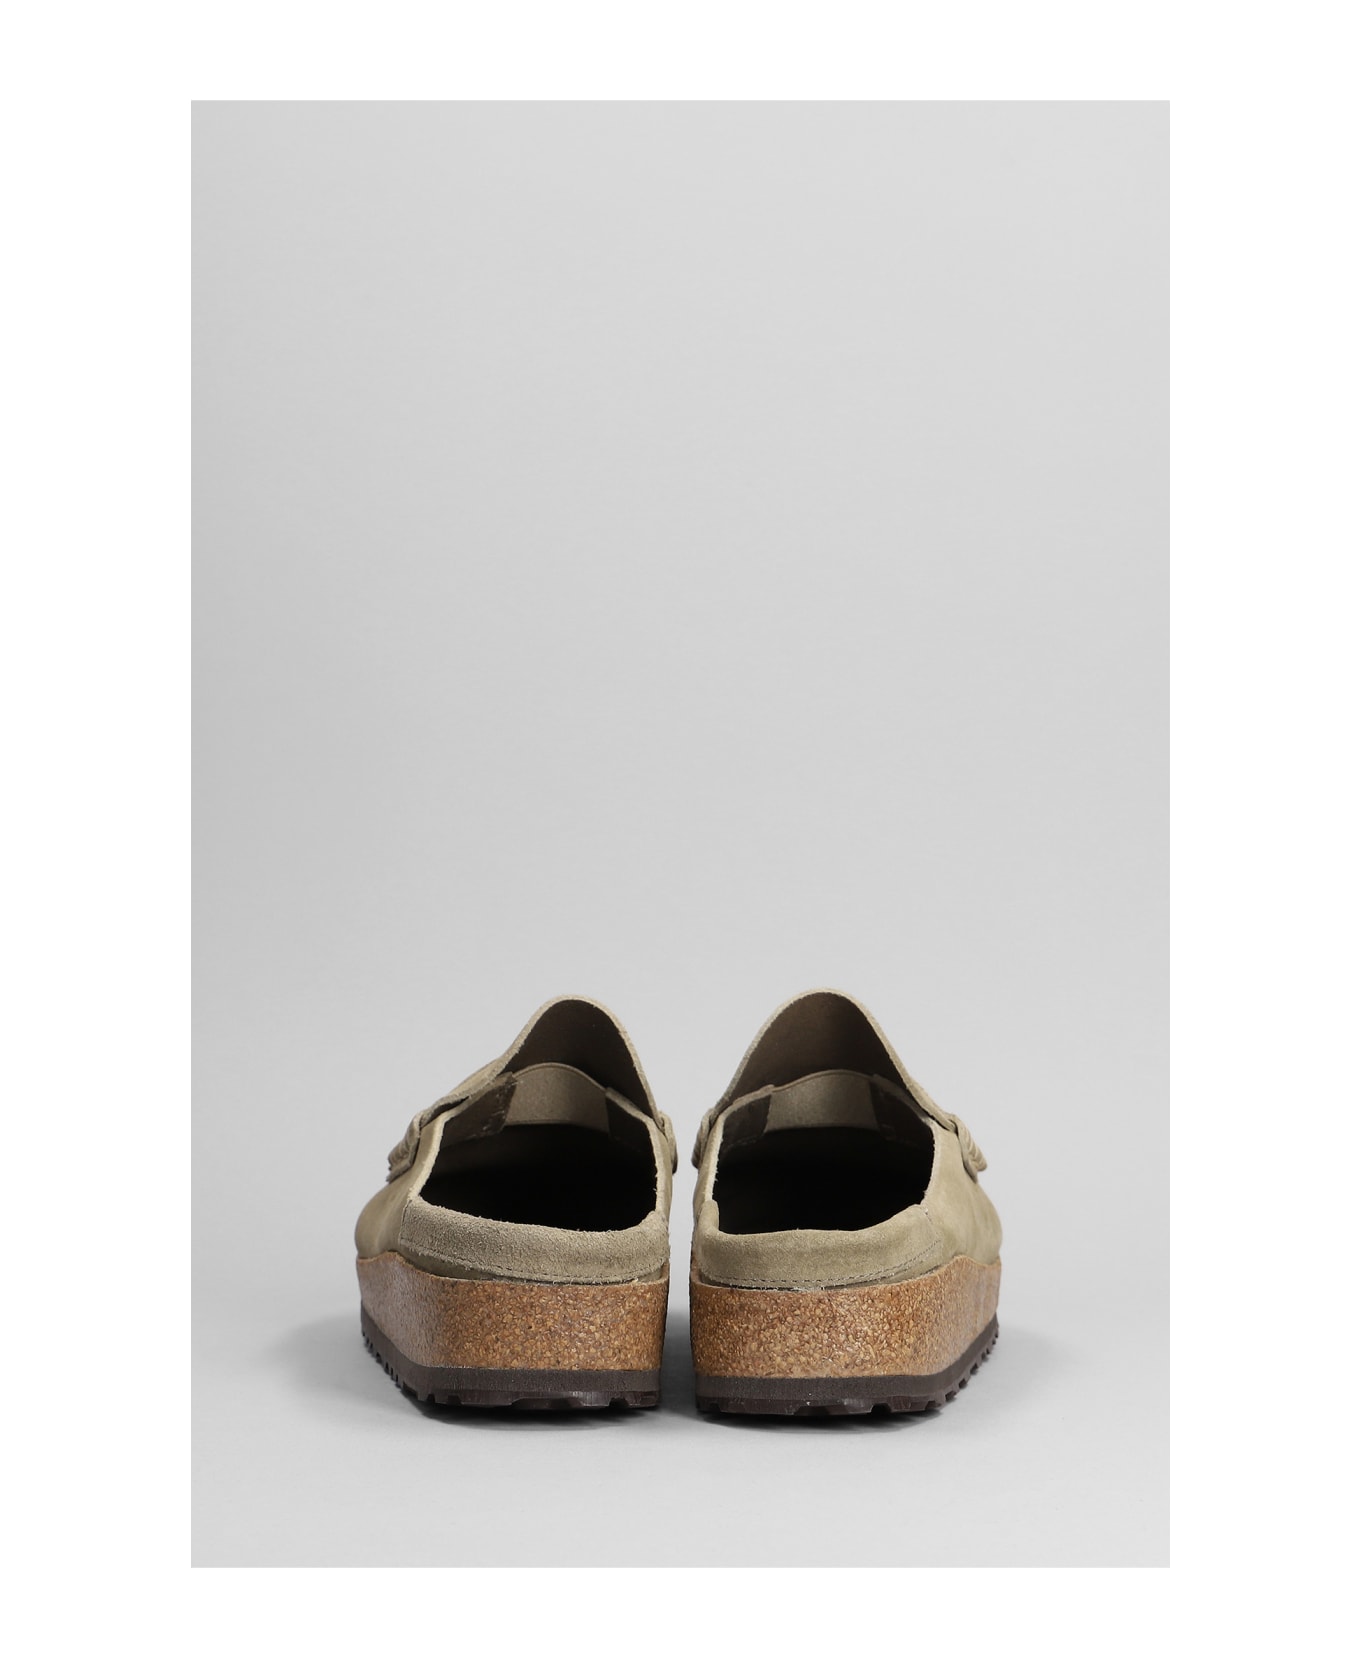 Birkenstock Naples Shoes - Beige